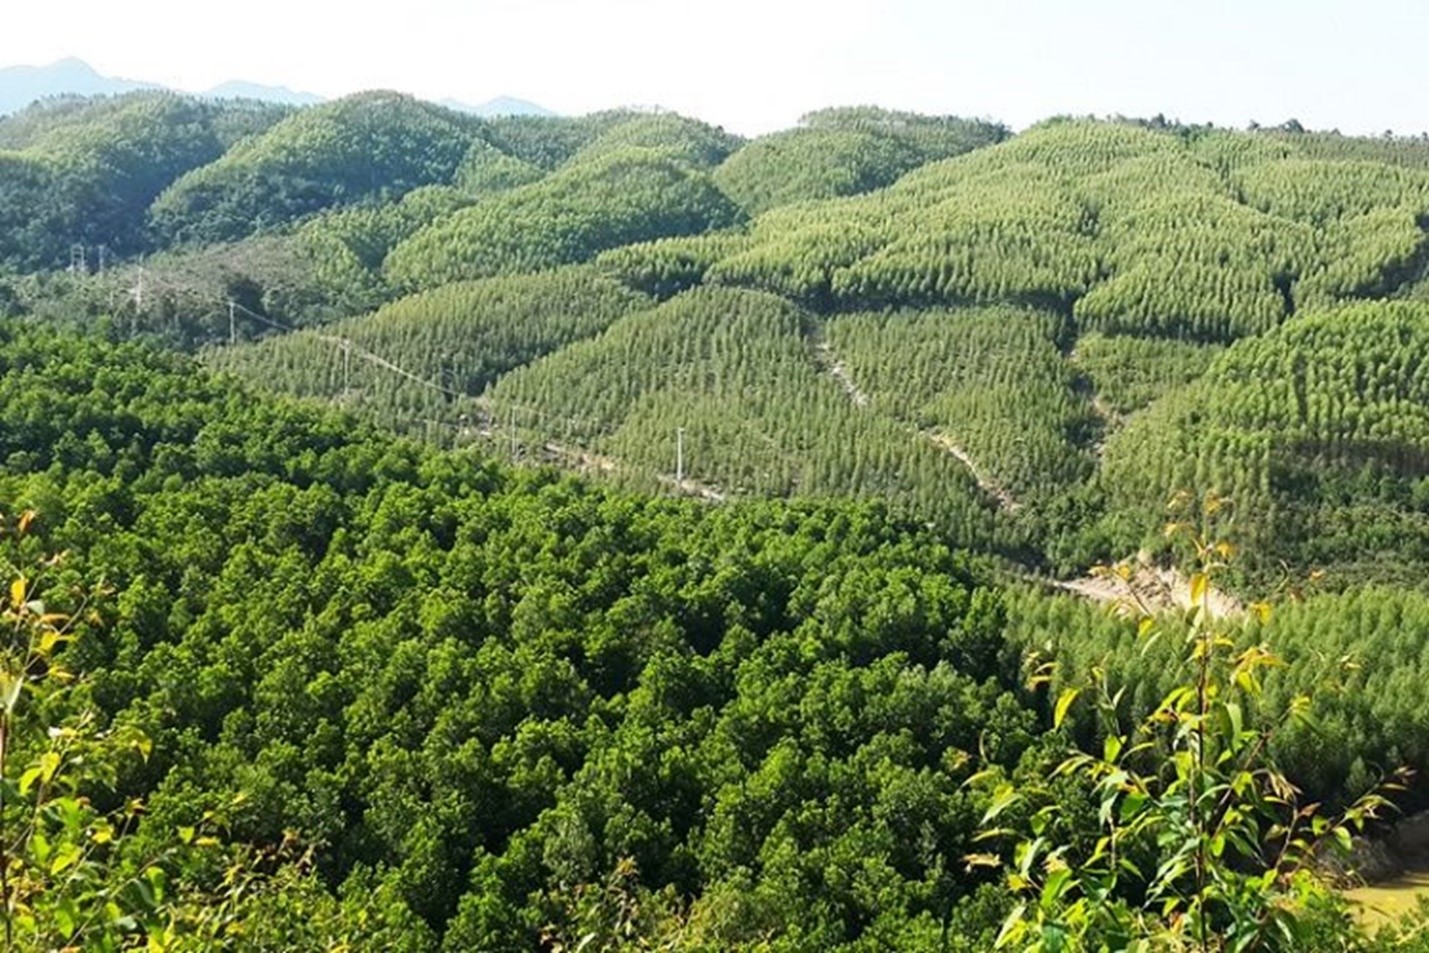 Quy hoạch lâm nghiệp tỉnh Yên Bái cần những đột phá để phát triển rừng bền vững (kỳ 2)